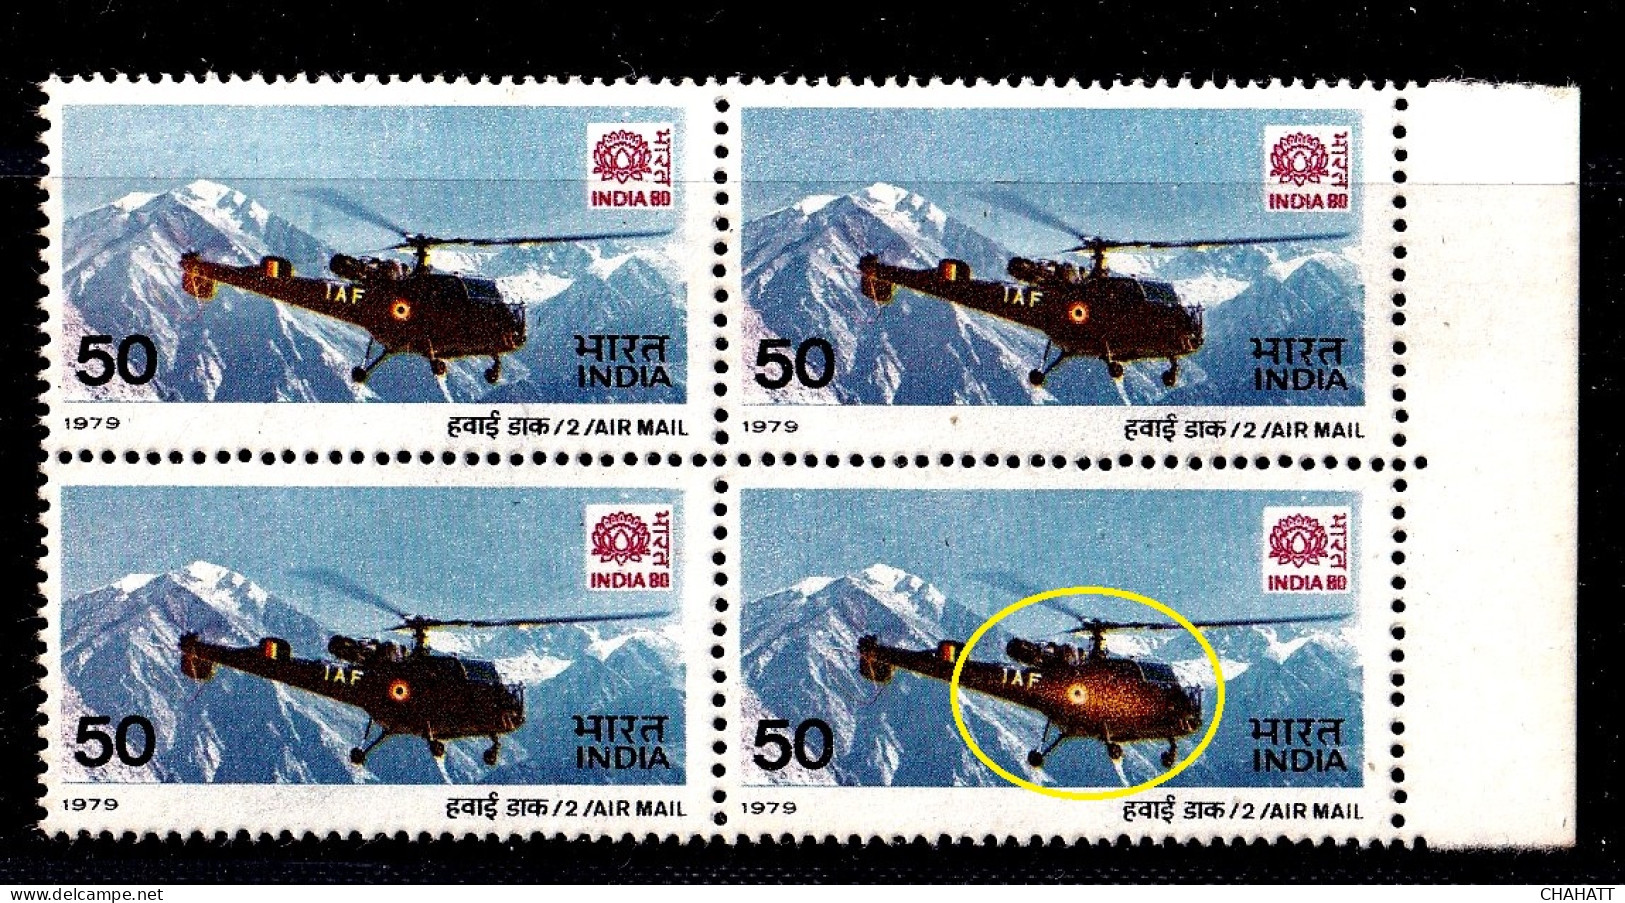 INDIA-1979- AIRMAIL-HELICOPTERS-50p- ERROR-COLOR VARIETY - BLOCK OF 4- H2-25 - Variétés Et Curiosités